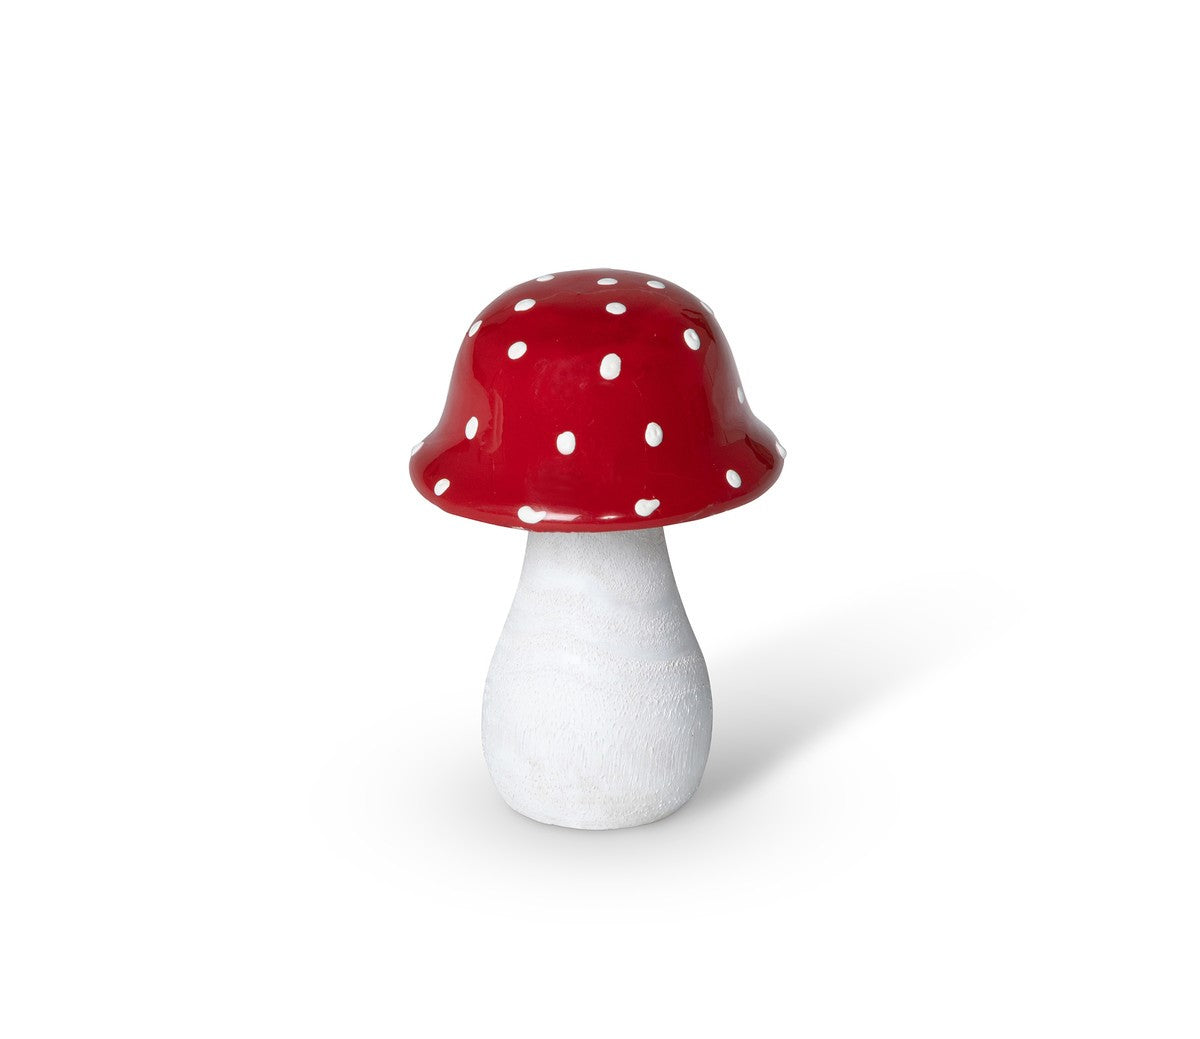 Small Red Polka Dot Wooden Mushroom